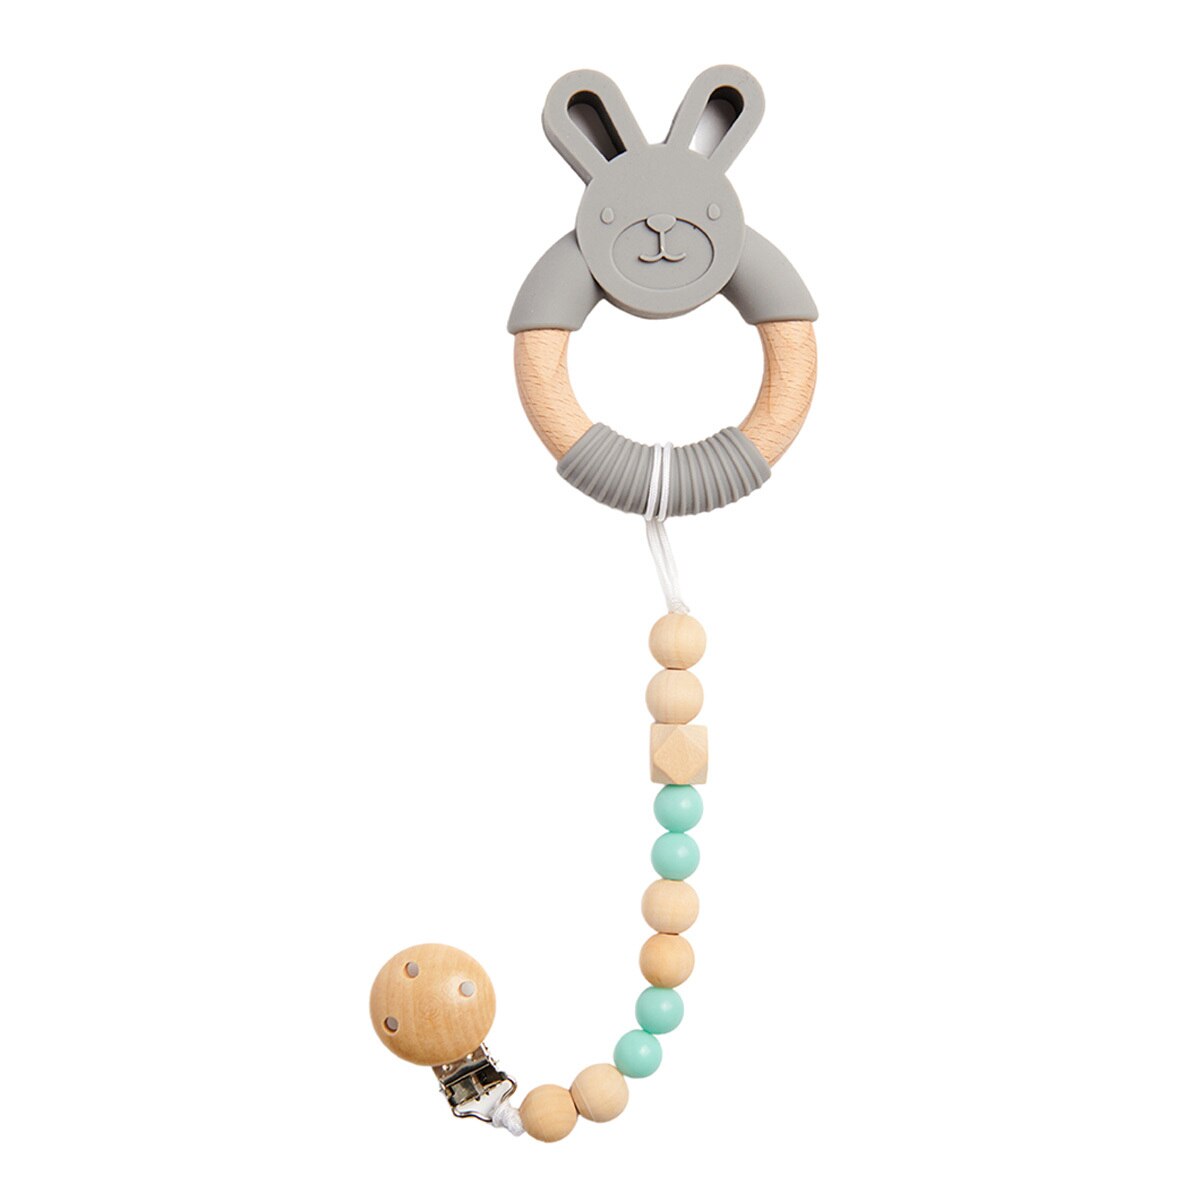 Icaru Kit de Tapete y Accesorios para Bebé con Diseño de Elefante